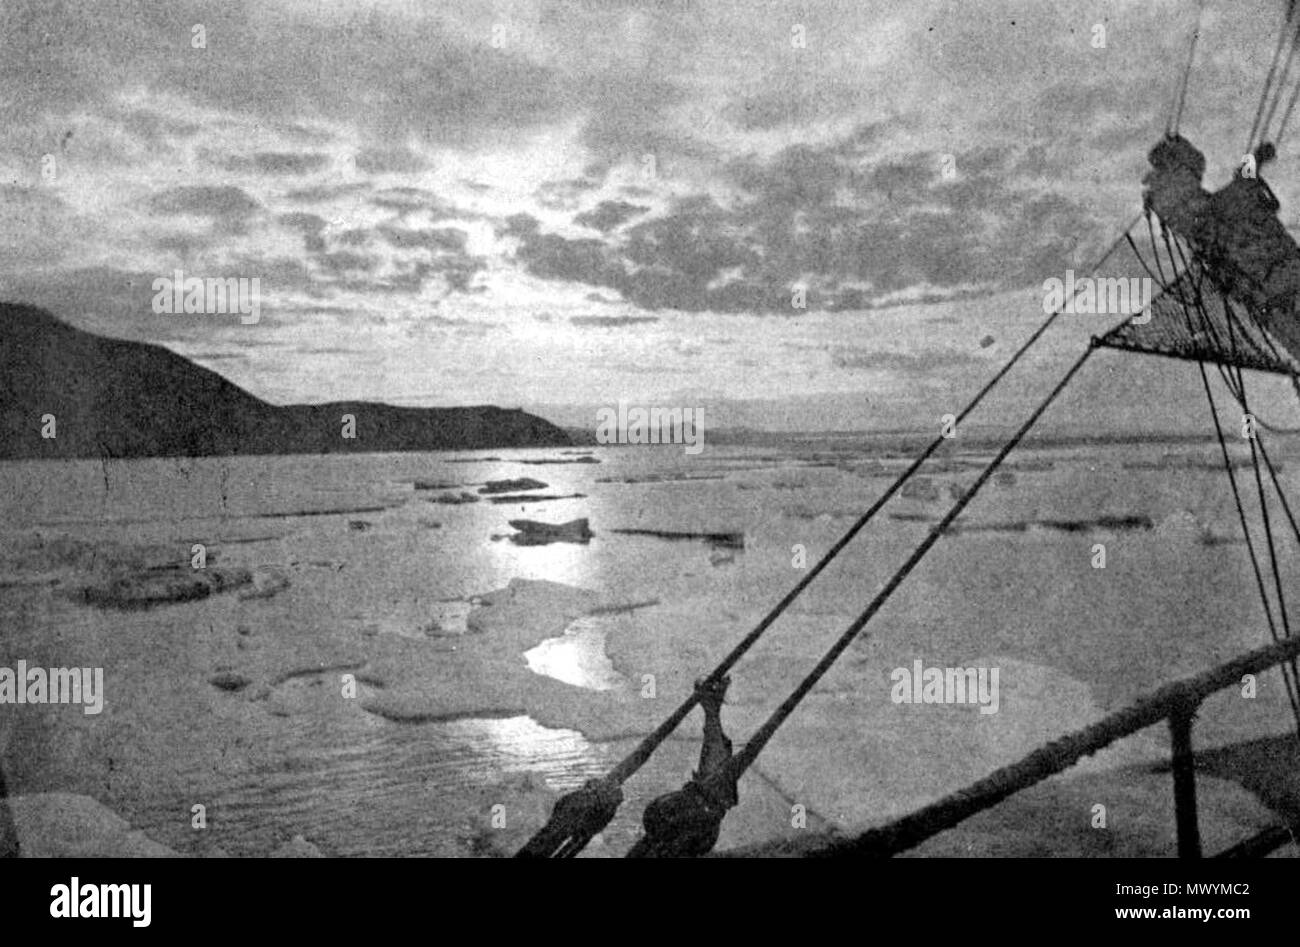 . Englisch: Eine arktische Morgen. 25. Juli 2011. Von einem Foto aus Cape Serdzekamen, Sibirien, von Dr. William J. Hamilton 463 Seite 97 - Kreuzfahrt von corwin Stockfoto